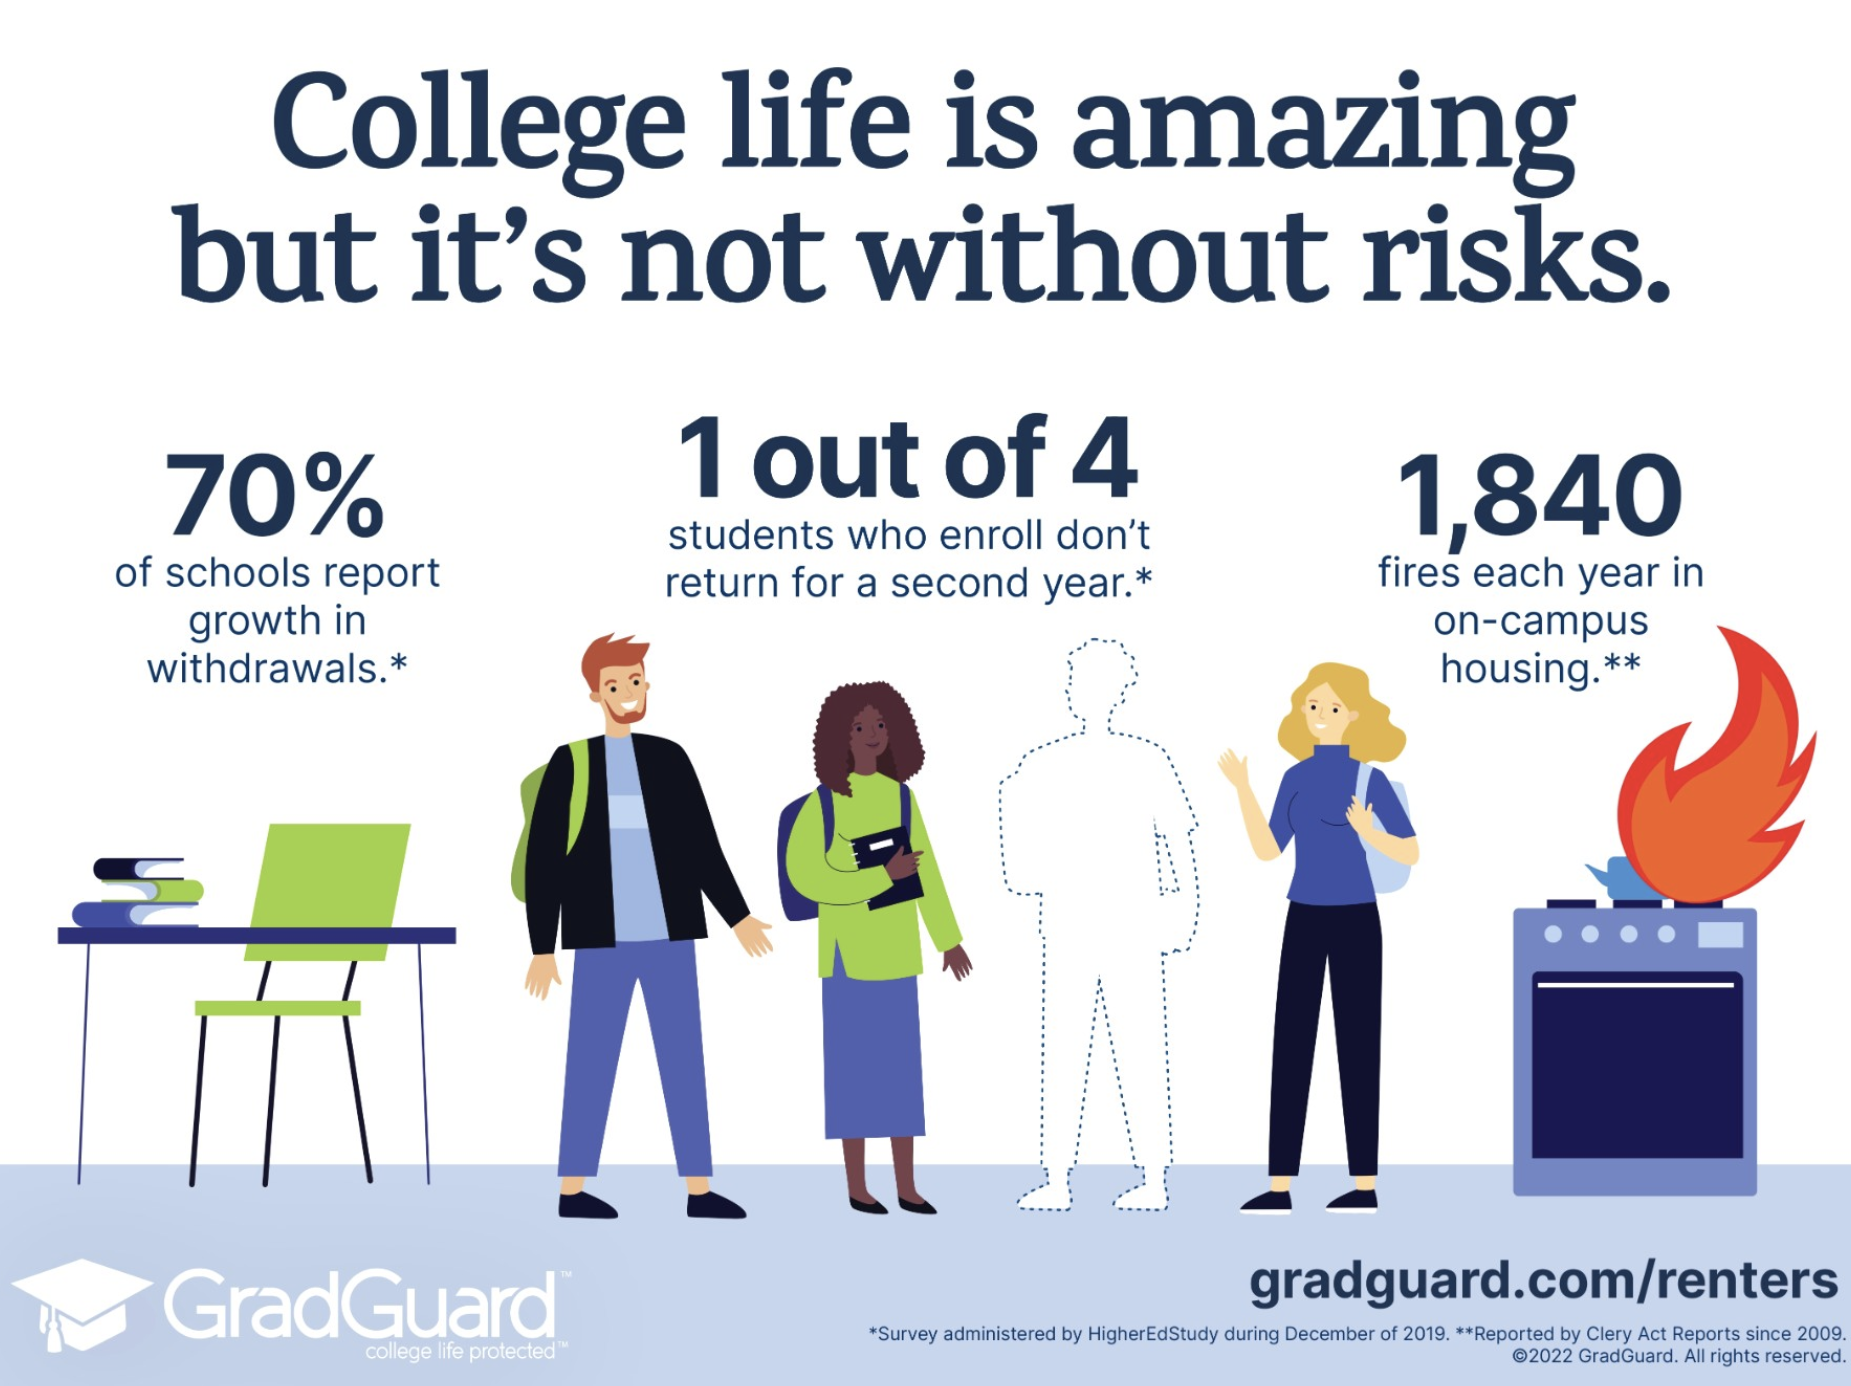 College has risks.